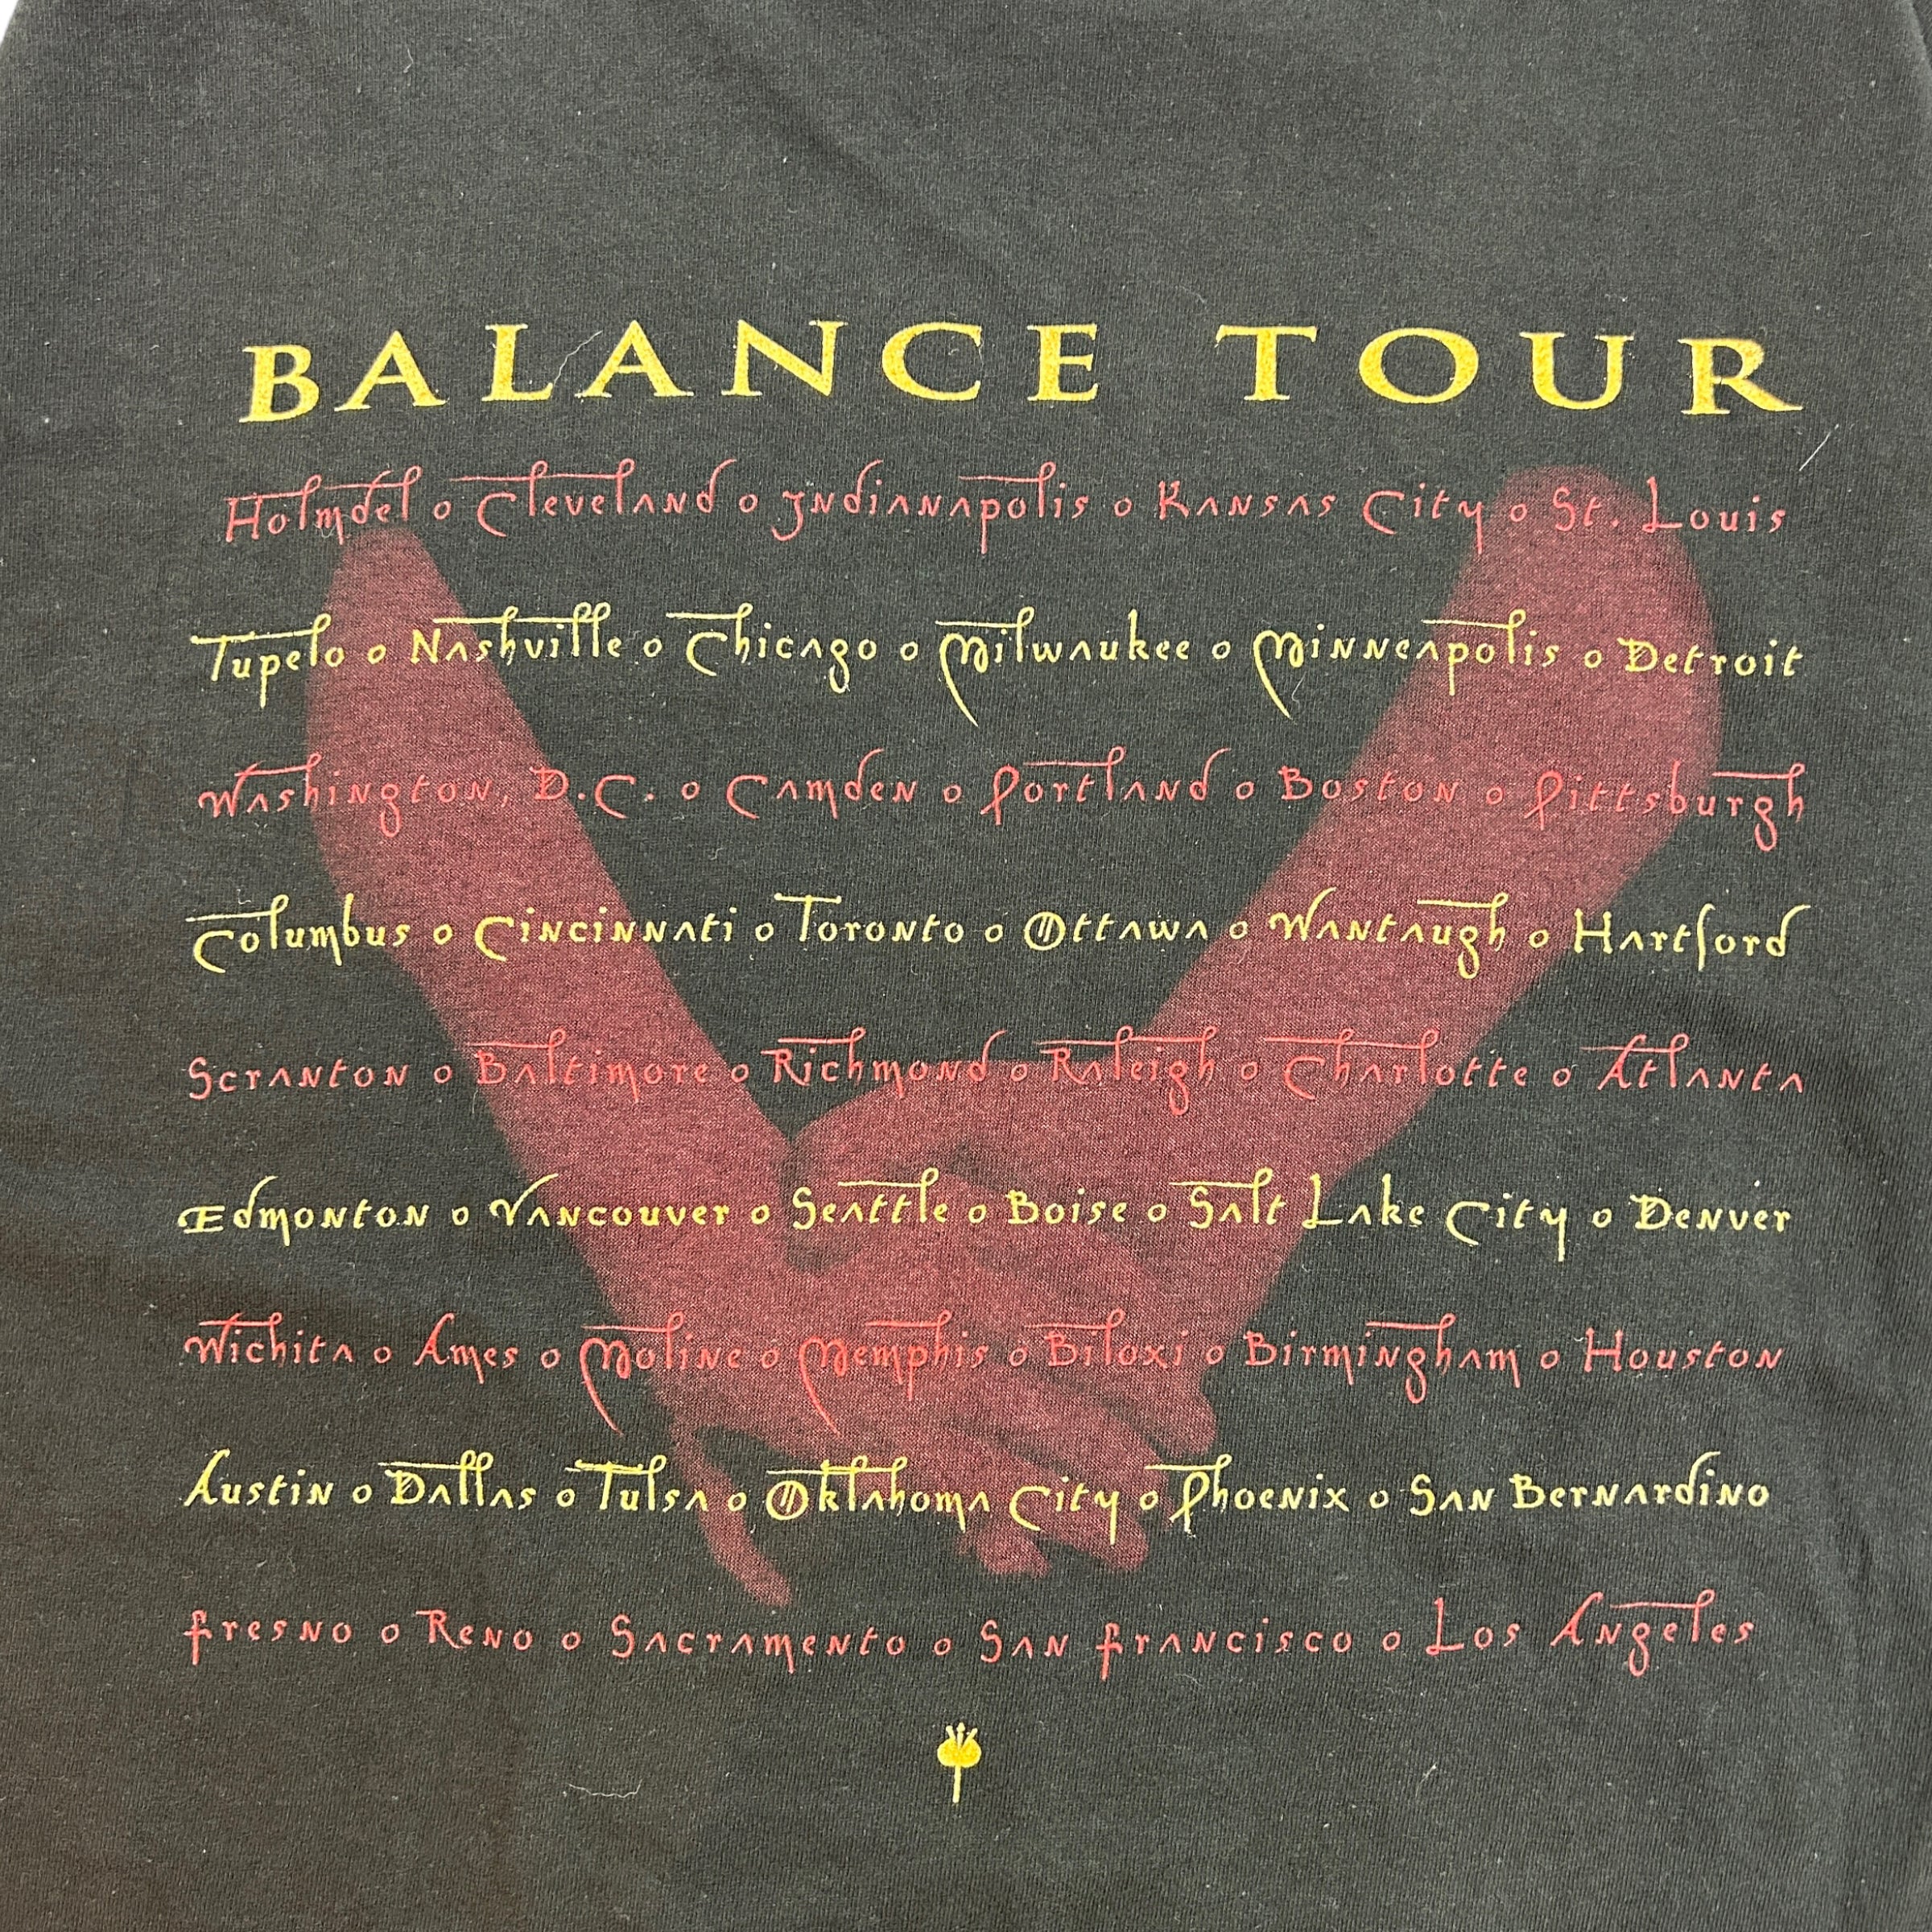 1995 Van Halen Balance Tee Black